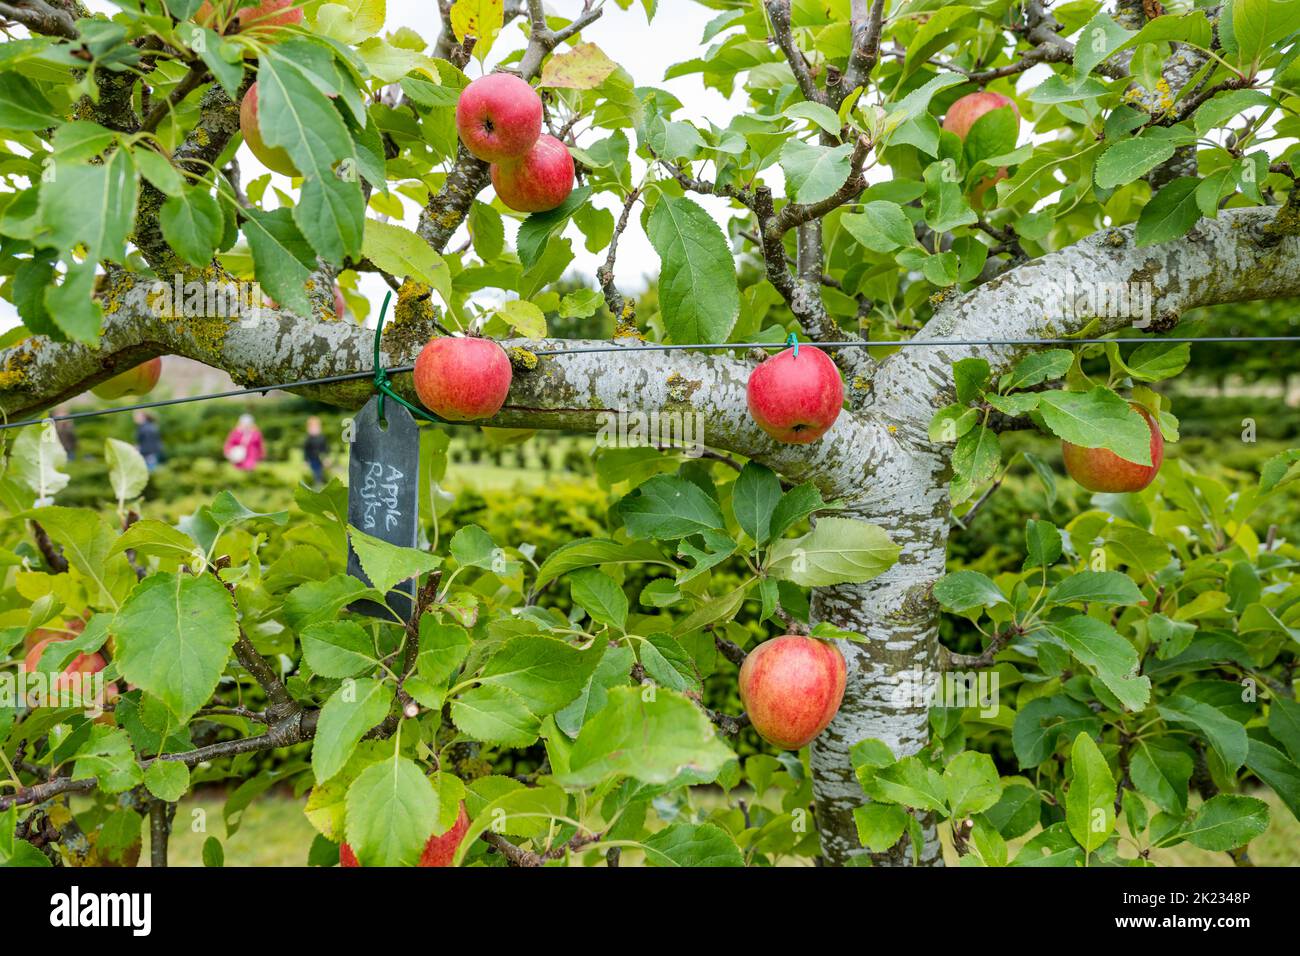 Heritage rote Äpfel wachsen auf einem ausgebildeten Apfelbaum, Amisfield Walled Garden, East Lothian, Schottland, Großbritannien Stockfoto